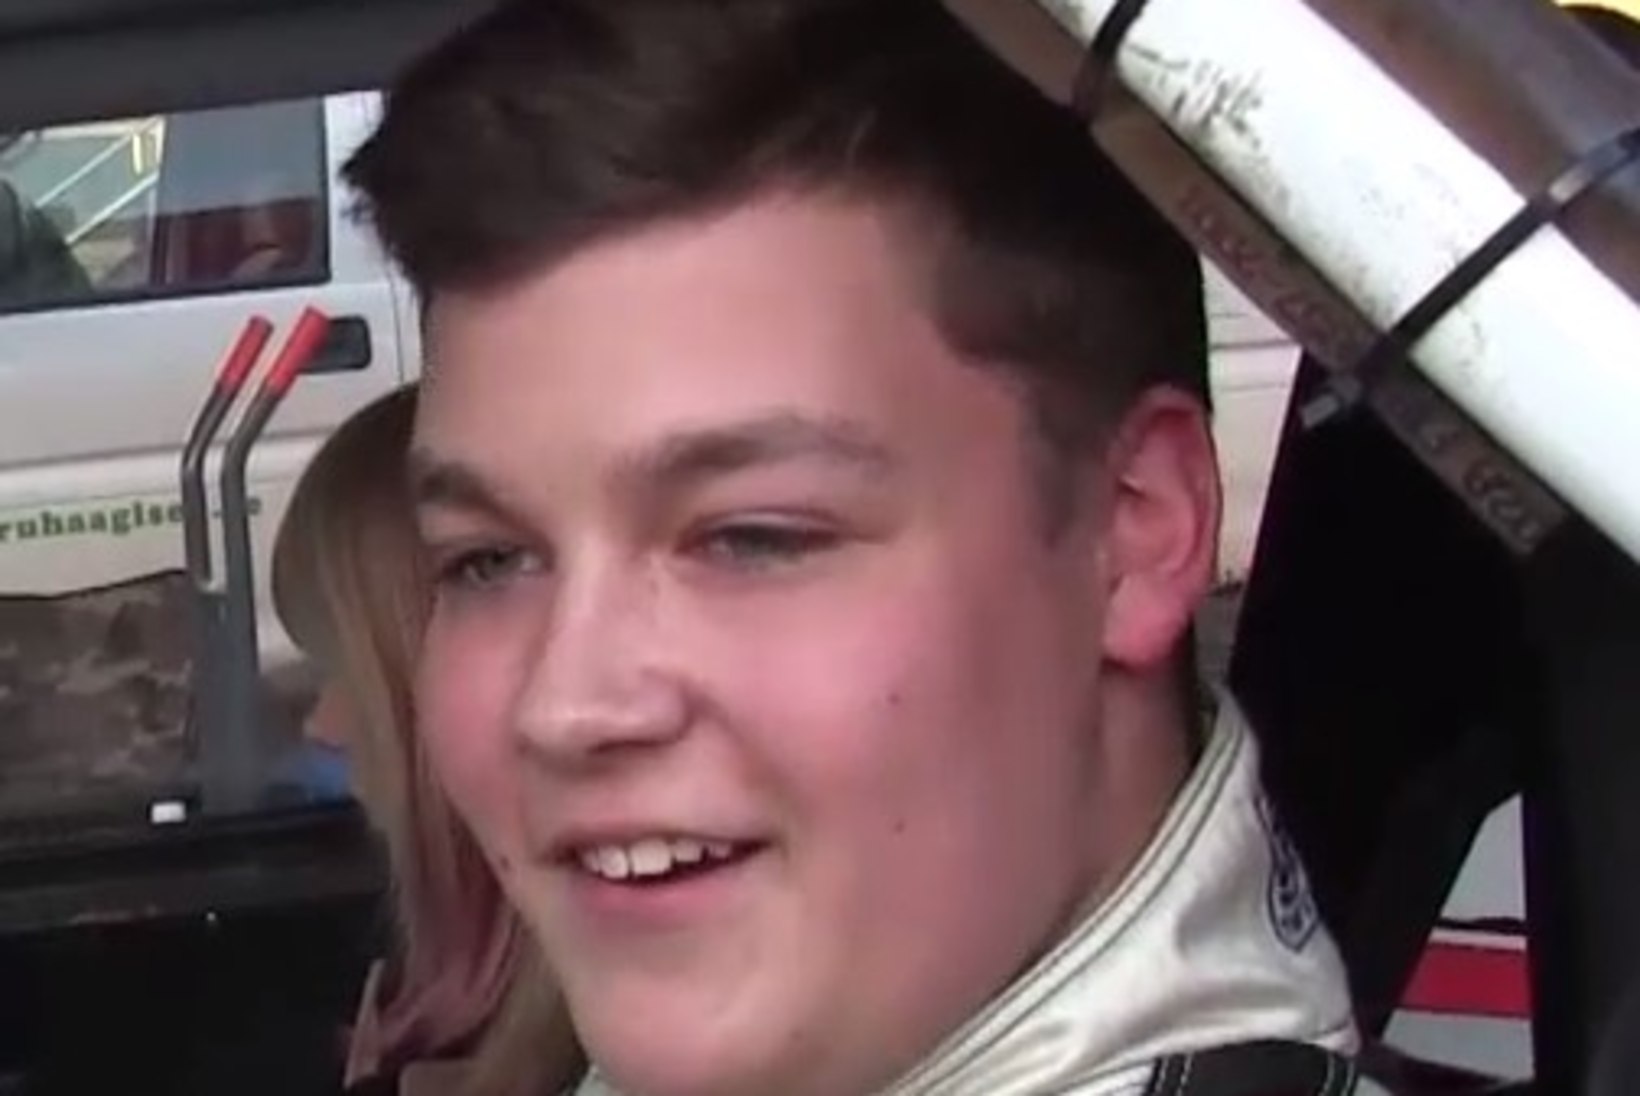 ÕHTULEHE VIDEO | Eesti üks edukaim driftija on kõigest 16-aastane koolipoiss